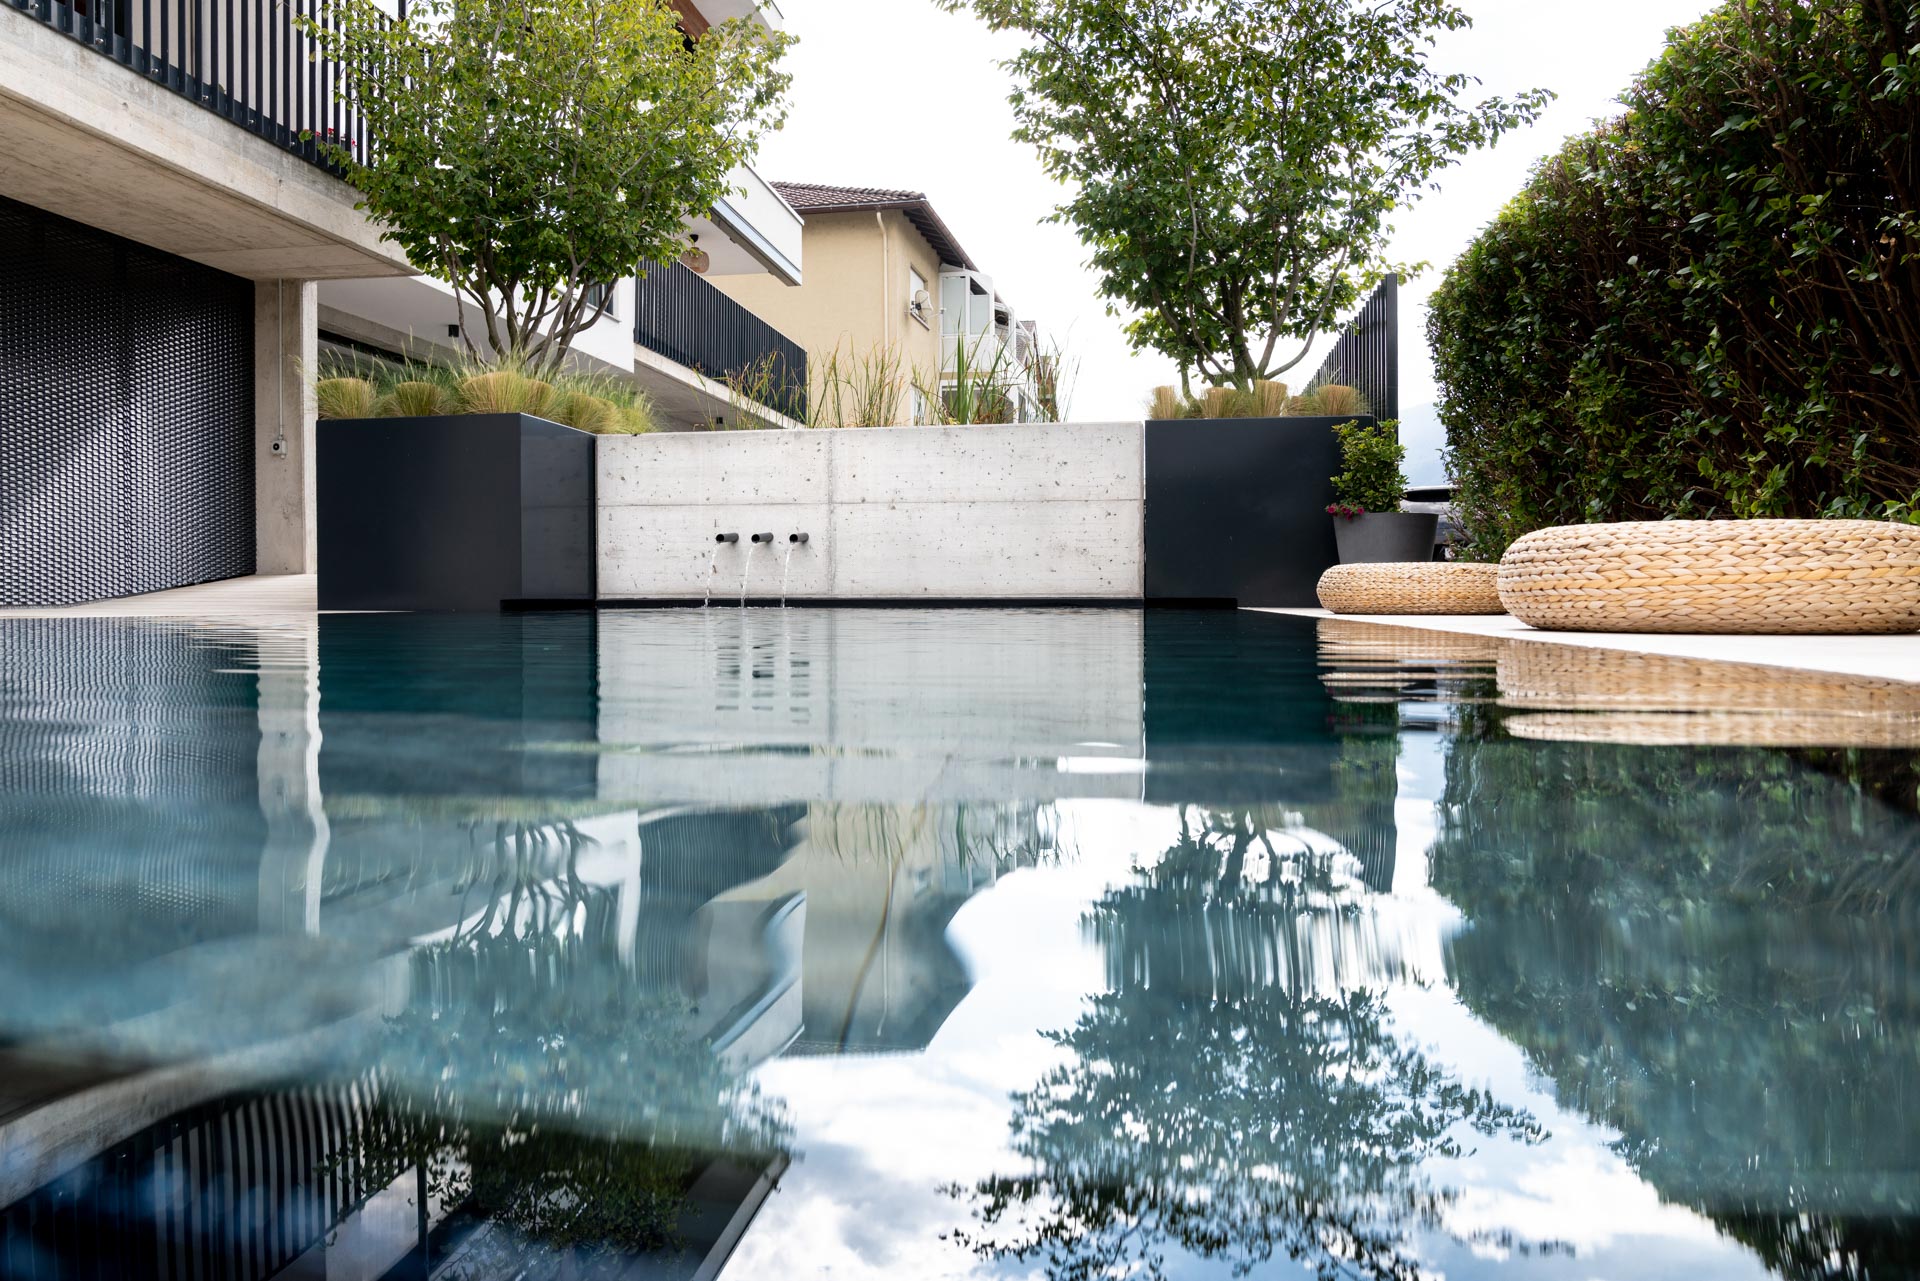 Infinity-Pool mit natürlicher Wasseraufbereitung von Swissteich